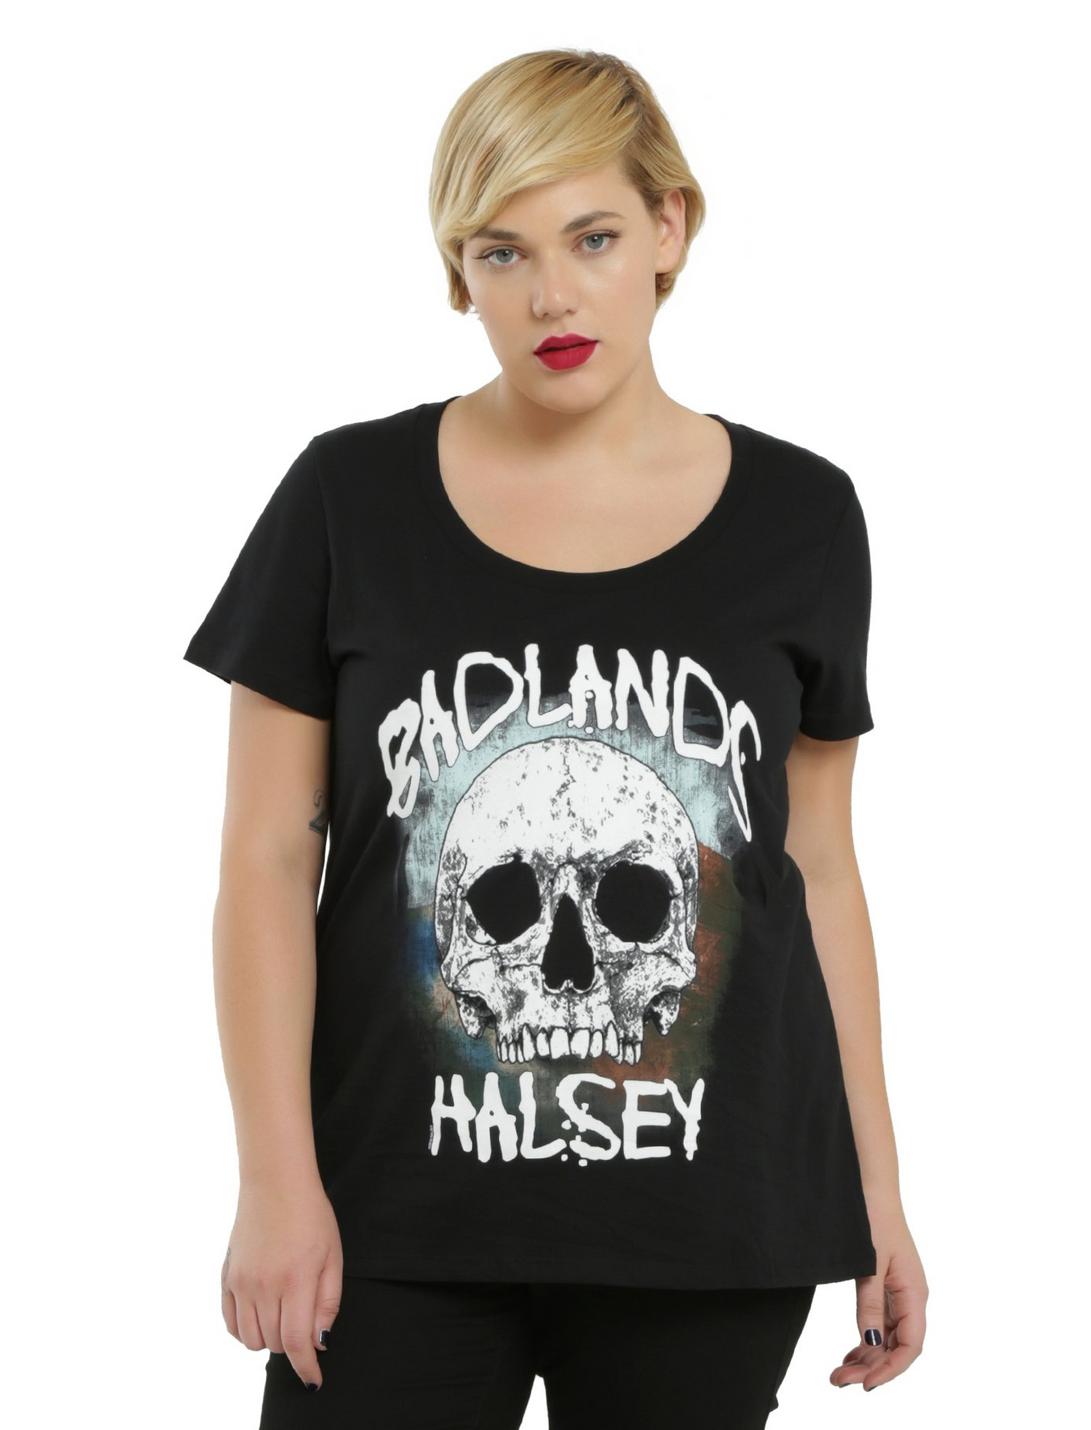 Halsey Badlands Skull Logo Girls T-Shirt Plus Size, BLACK, hi-res